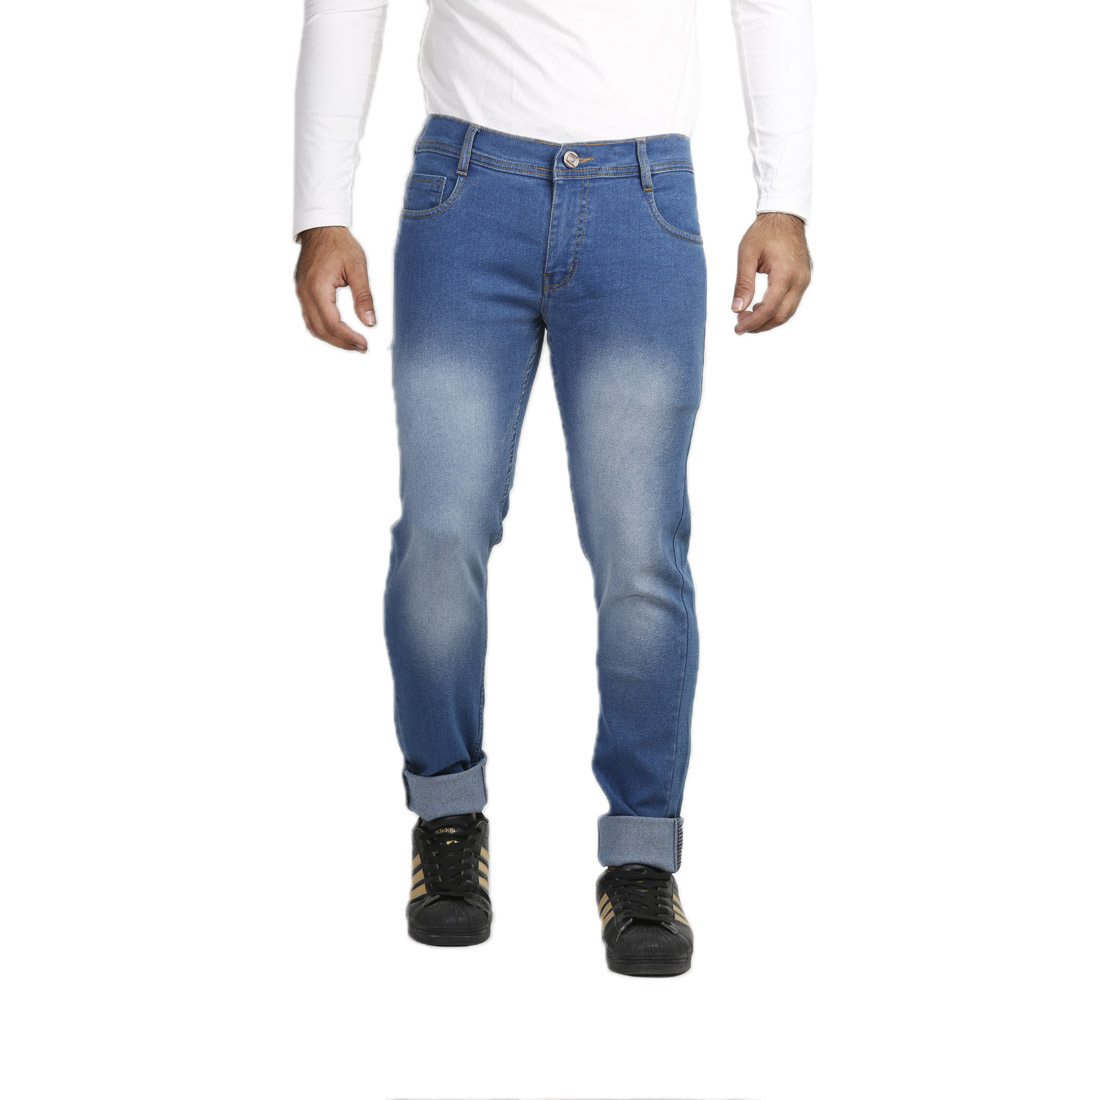 Buy Vrgin Men's Black Slim Fit Jeans Online @ ₹649 from ShopClues